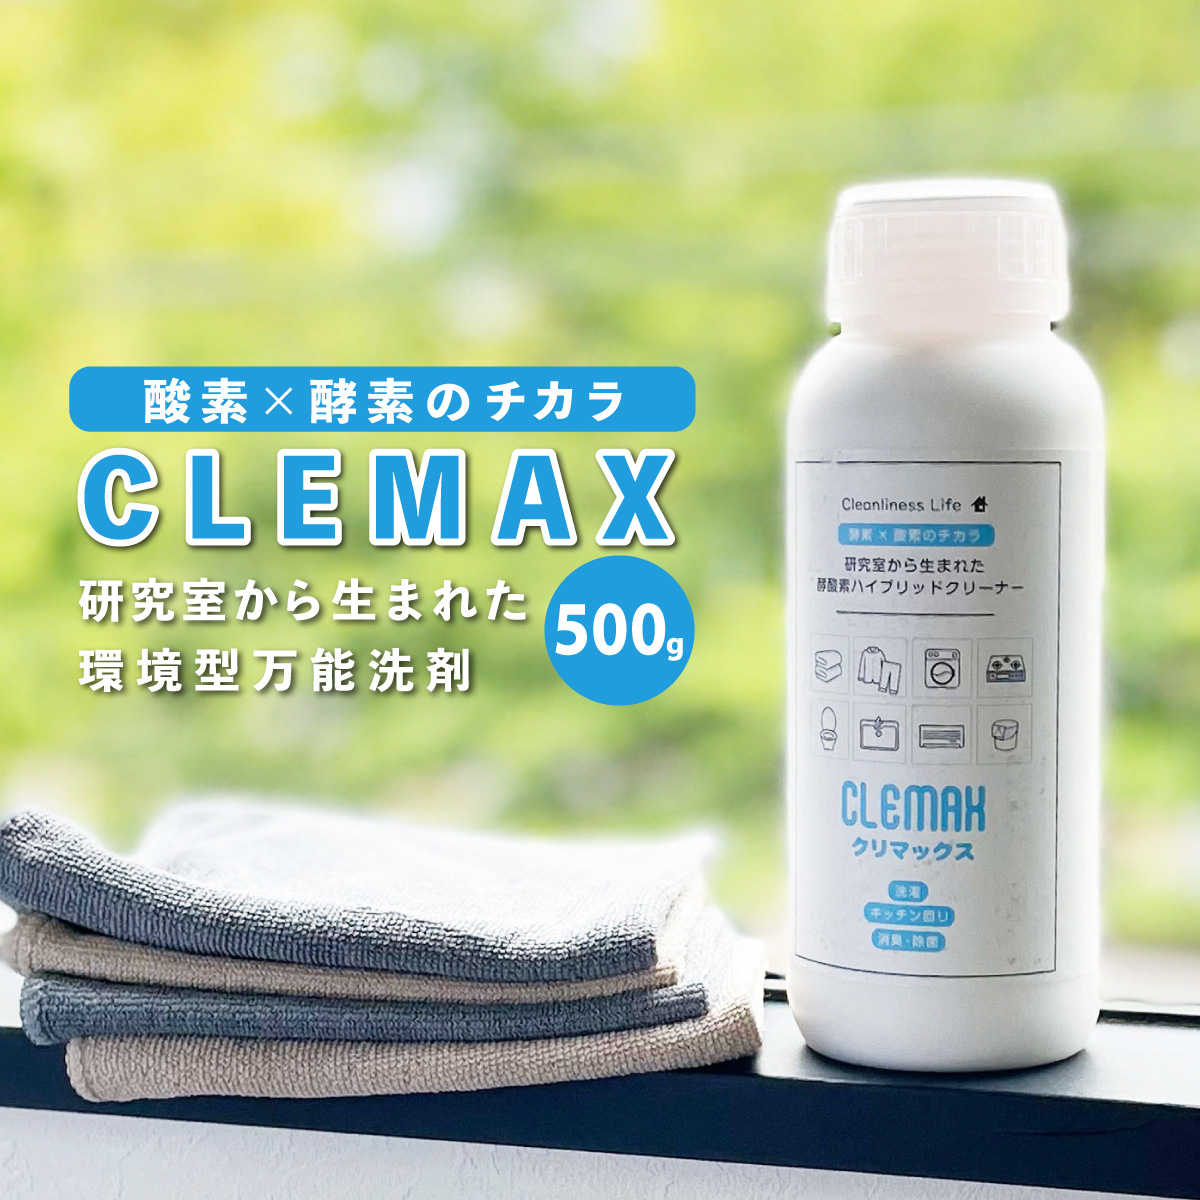 万能洗剤 CLEMAXクリマックス 500g 除菌効力99.9% ハイブリッド洗剤